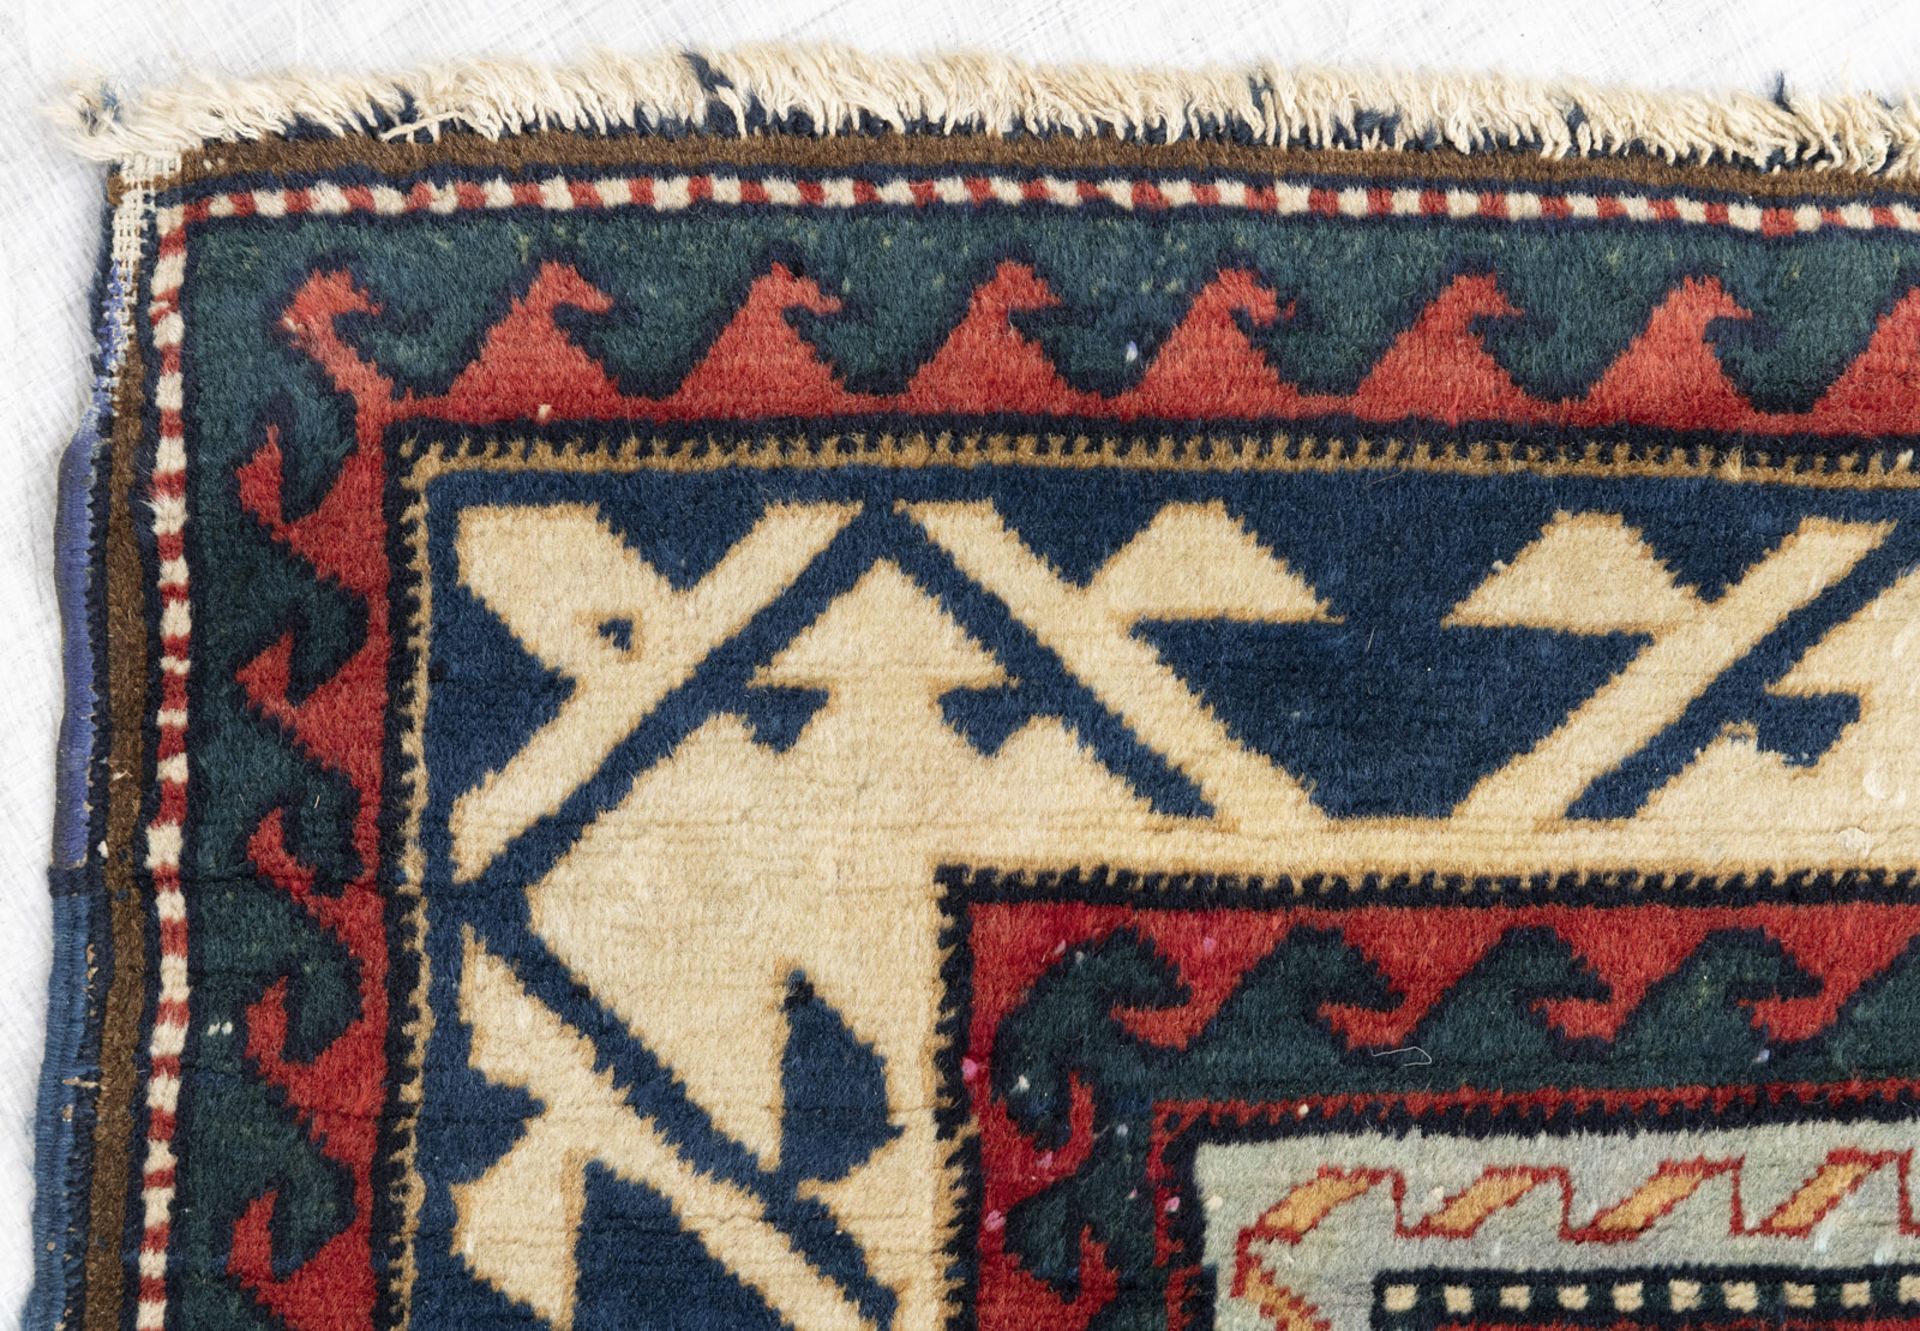 Alter Teppich mit Fakhralo-Musterung - Bild 5 aus 6